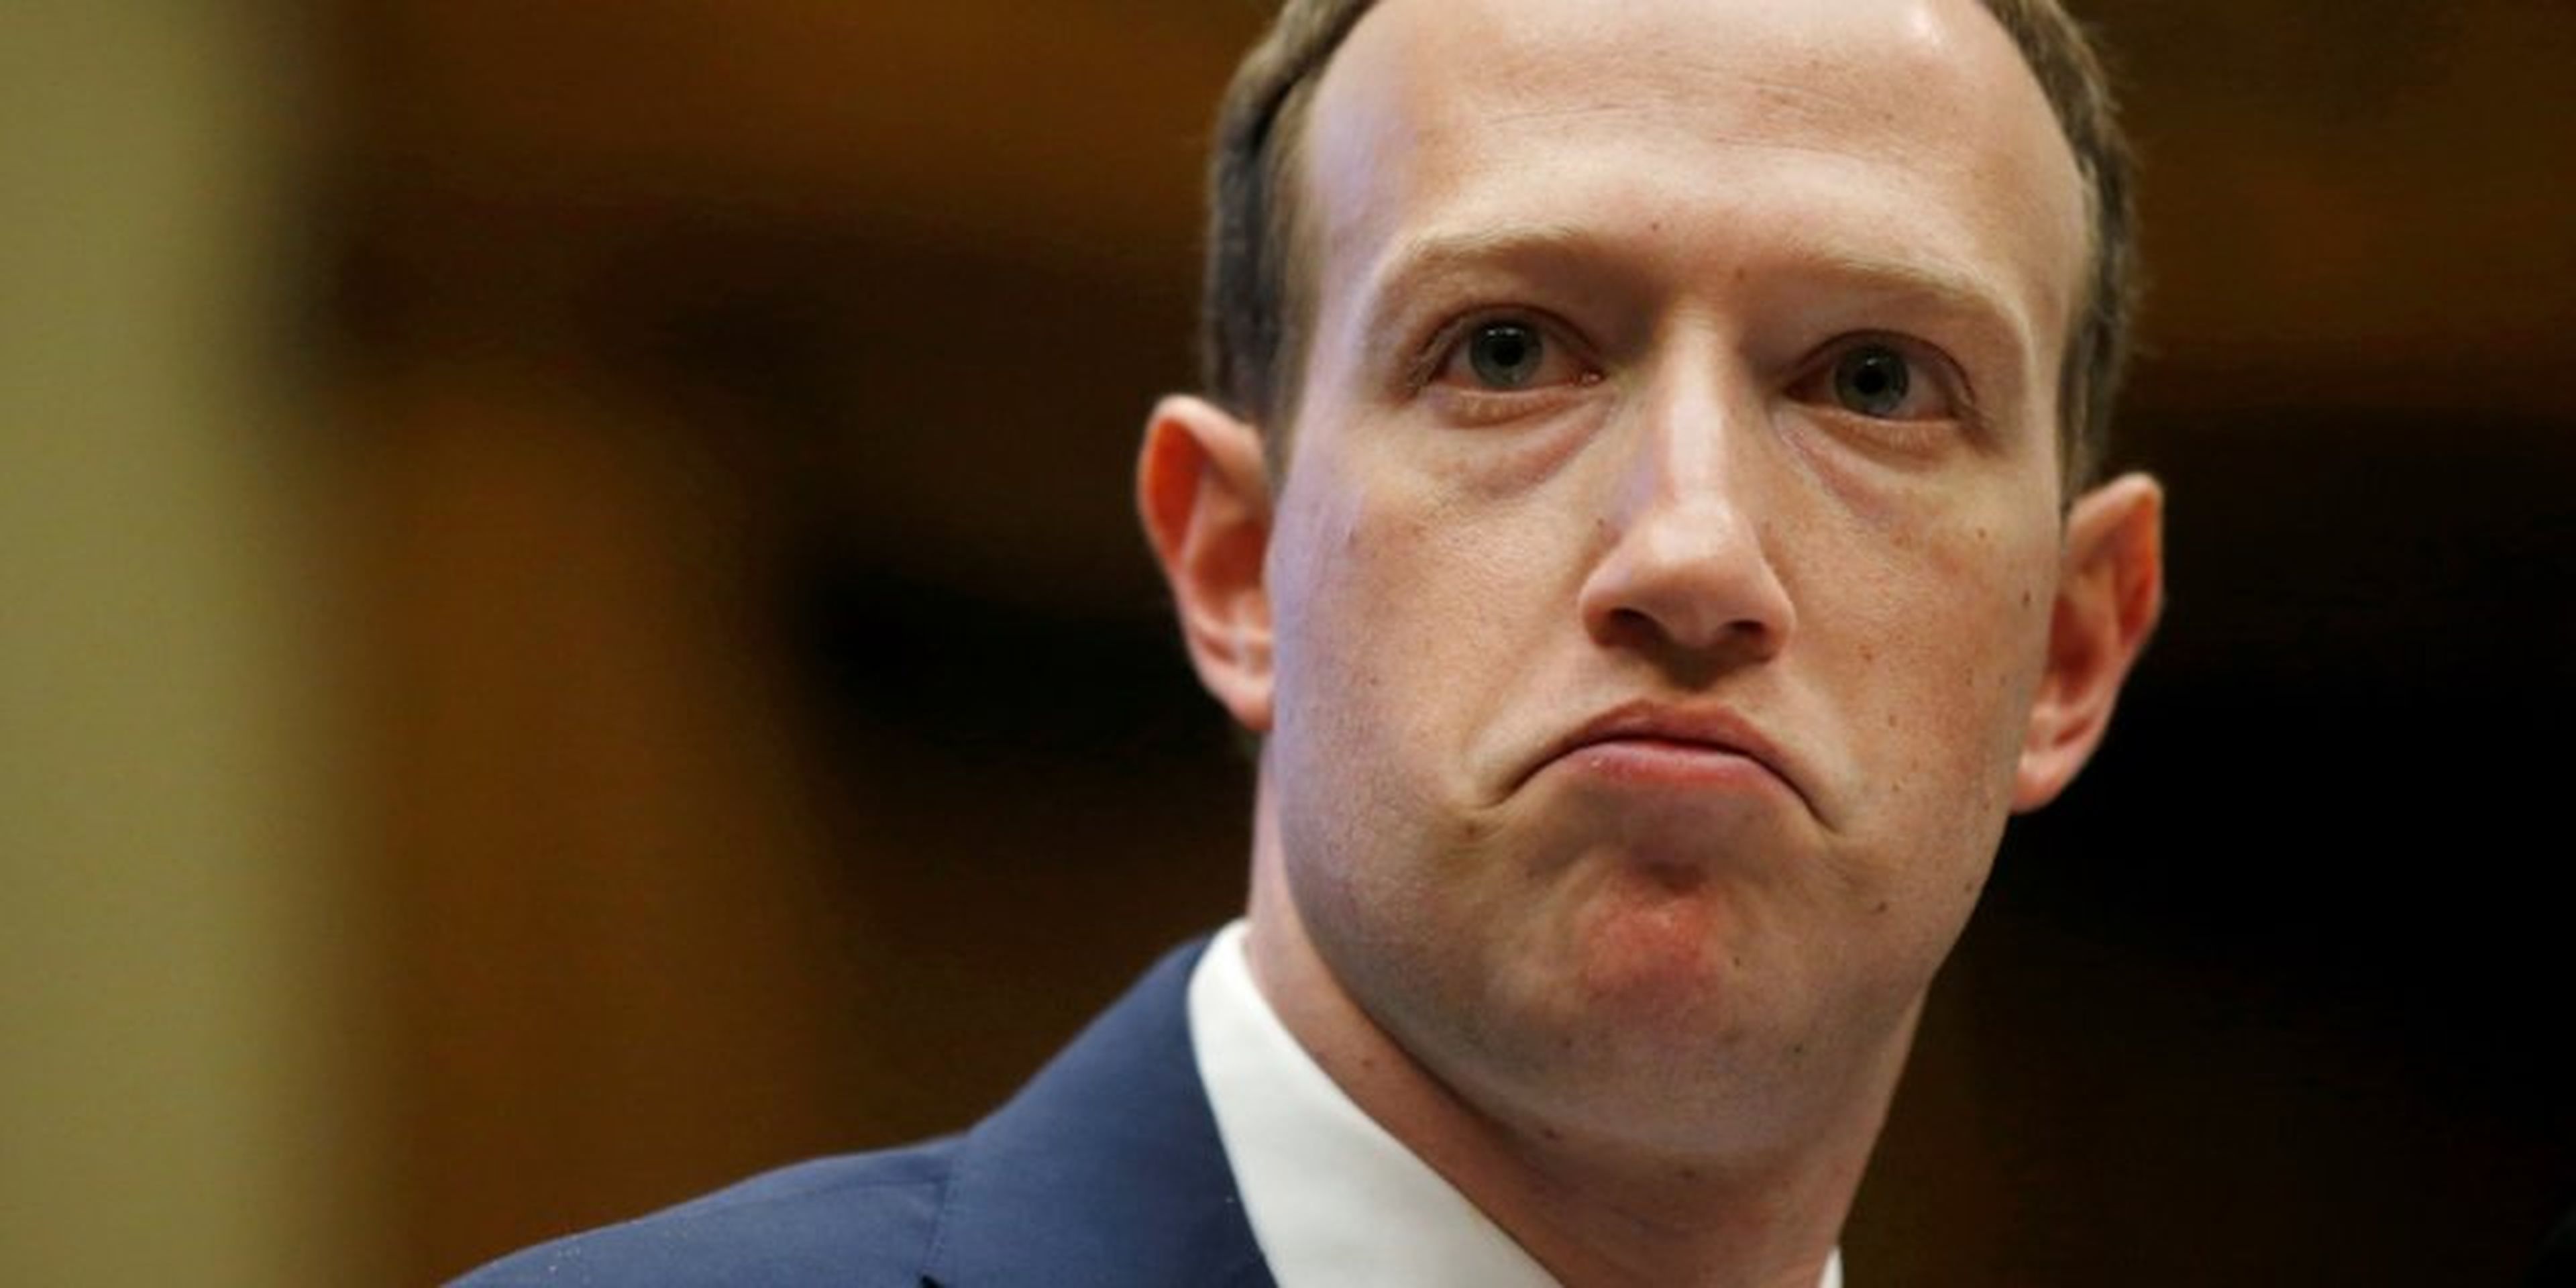 El CEO de Facebook, Mark Zuckerberg